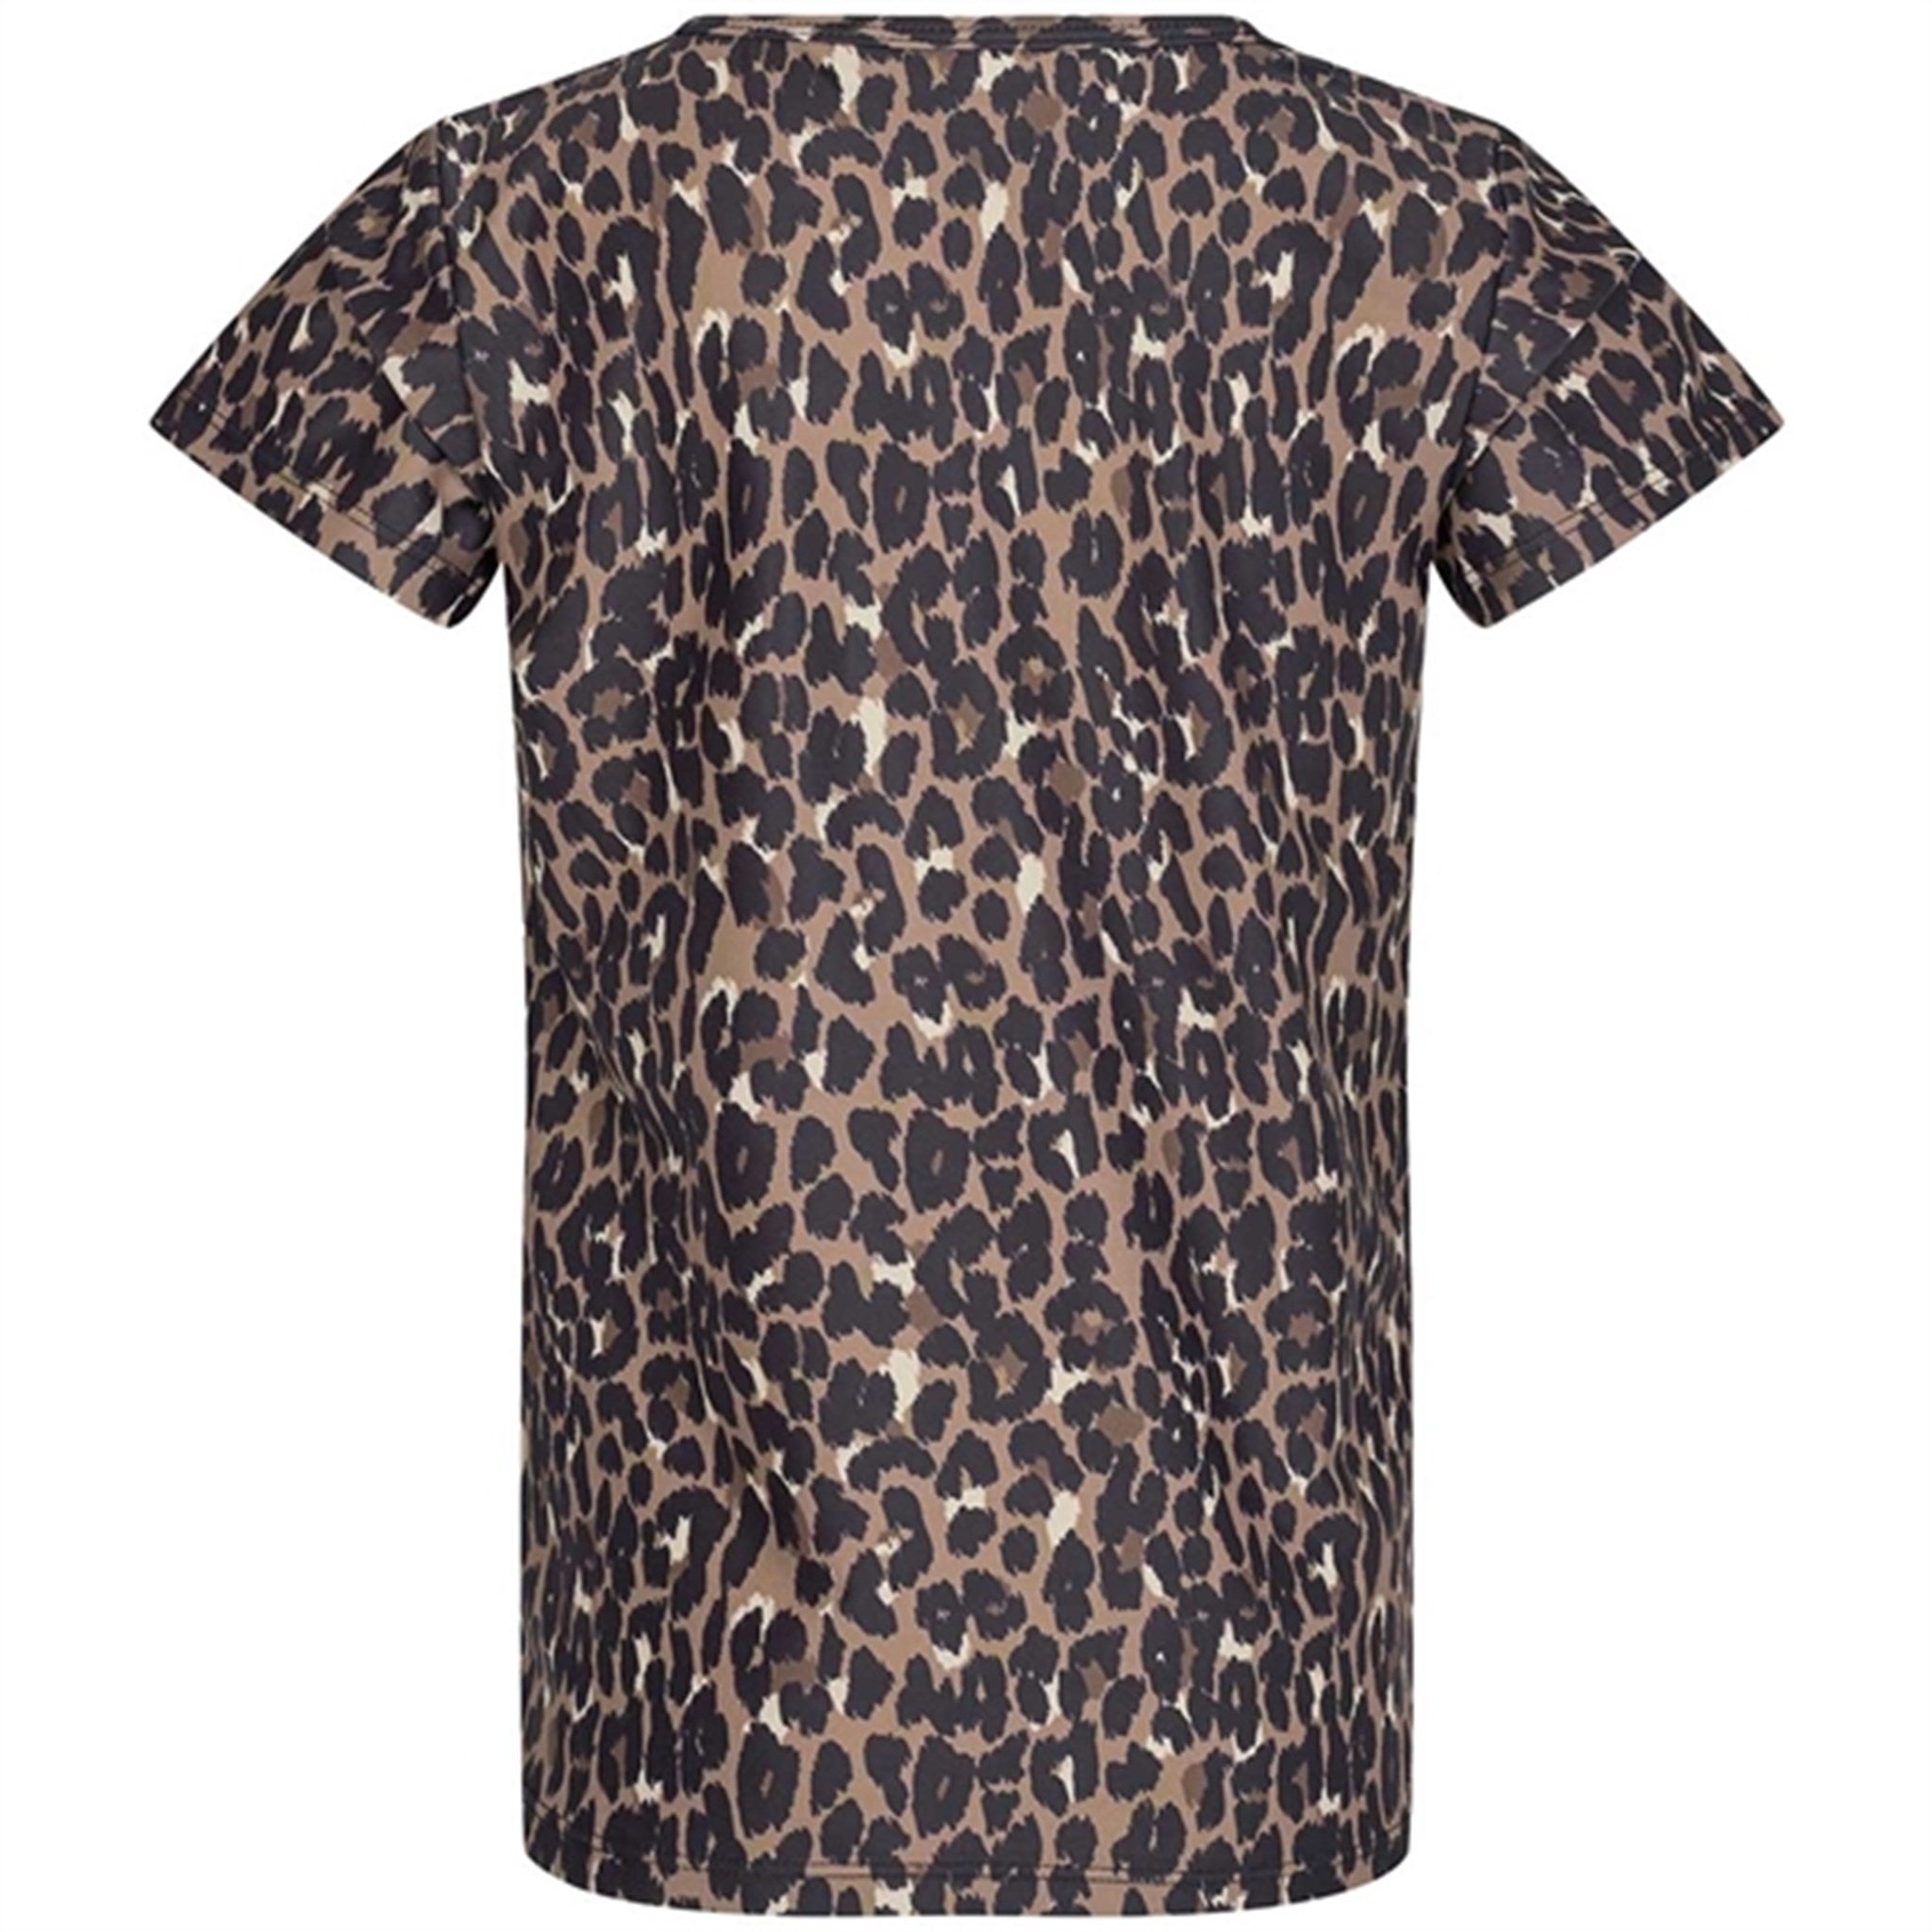 Sofie Schnoor Young Leopard Louisa T-shirt 2